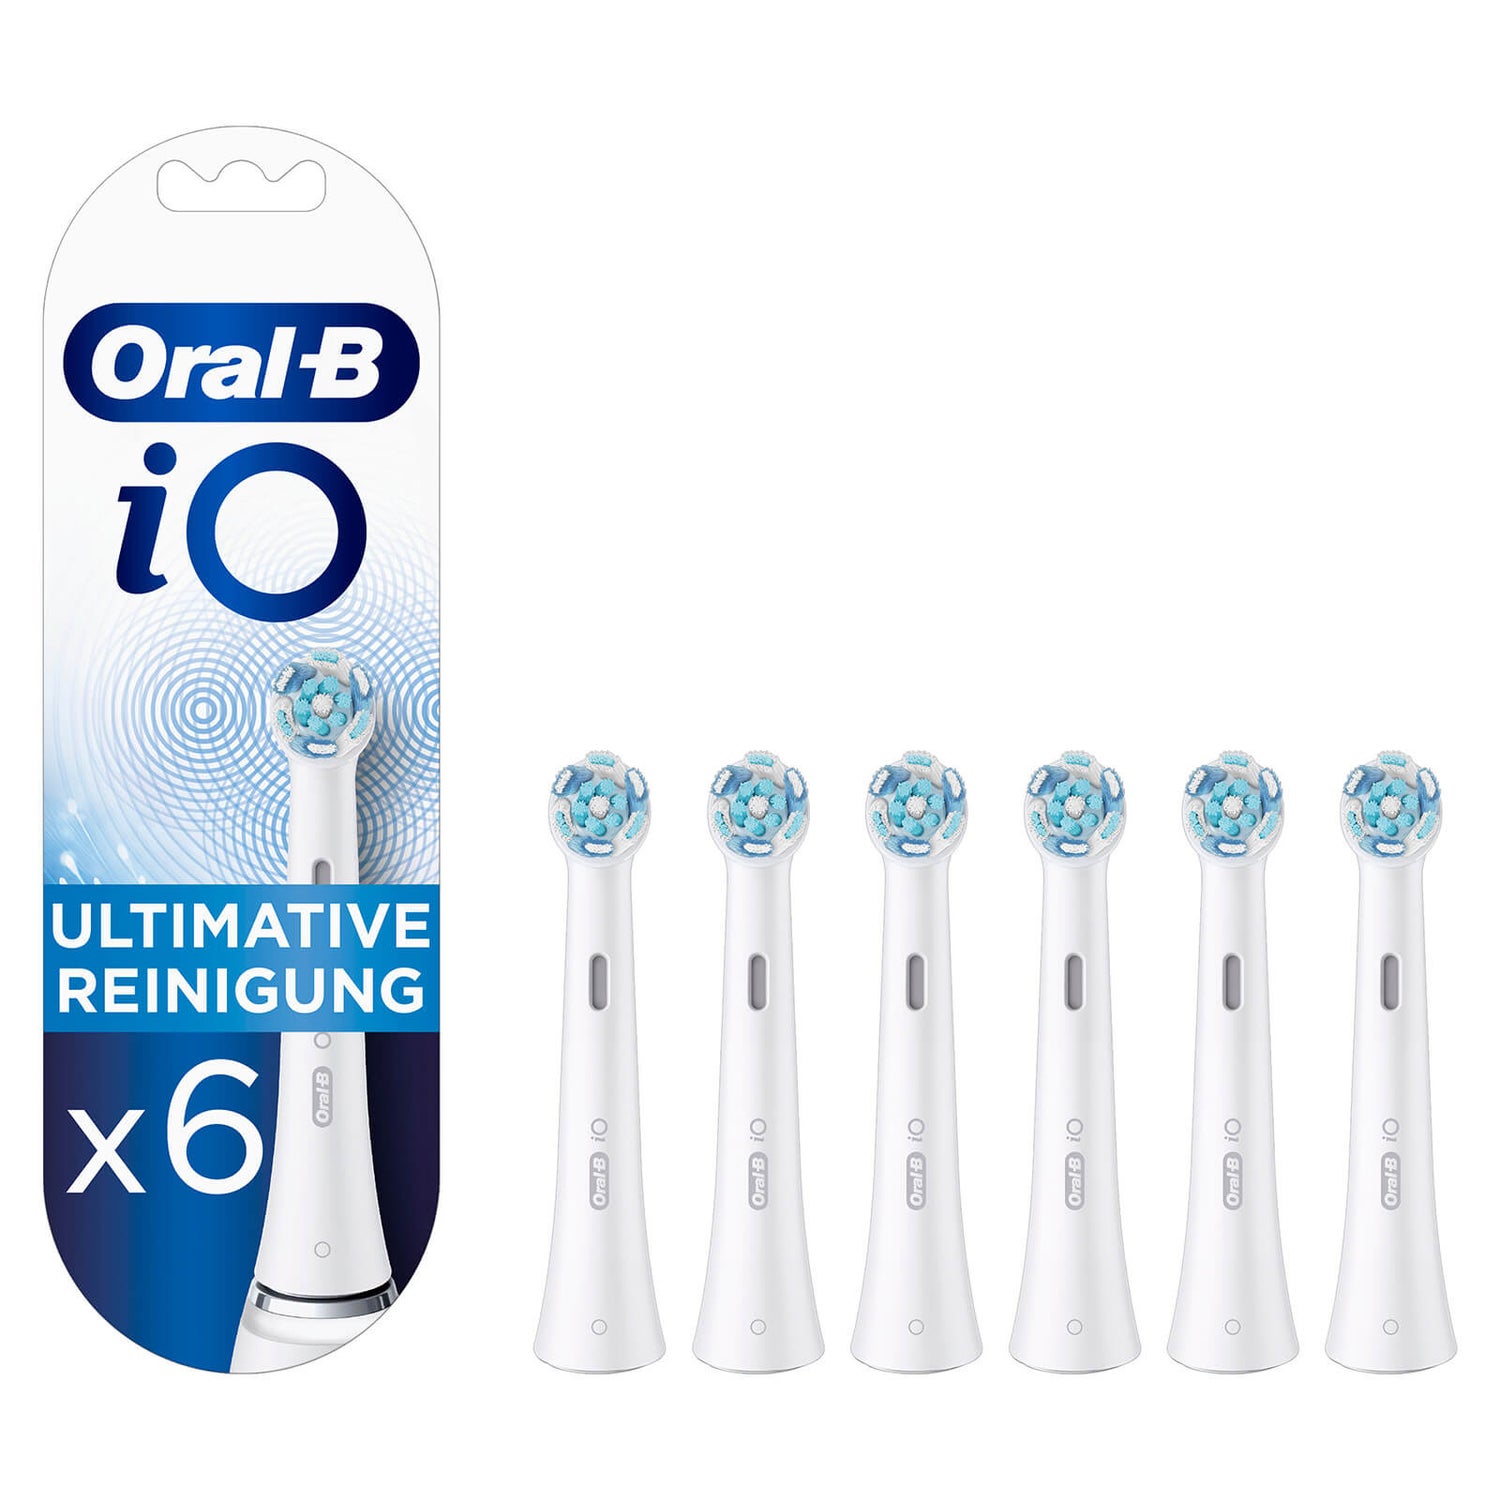 Reinigung Ultimative Oral-B | iO DE Aufsteckbürsten 6er Oral-B